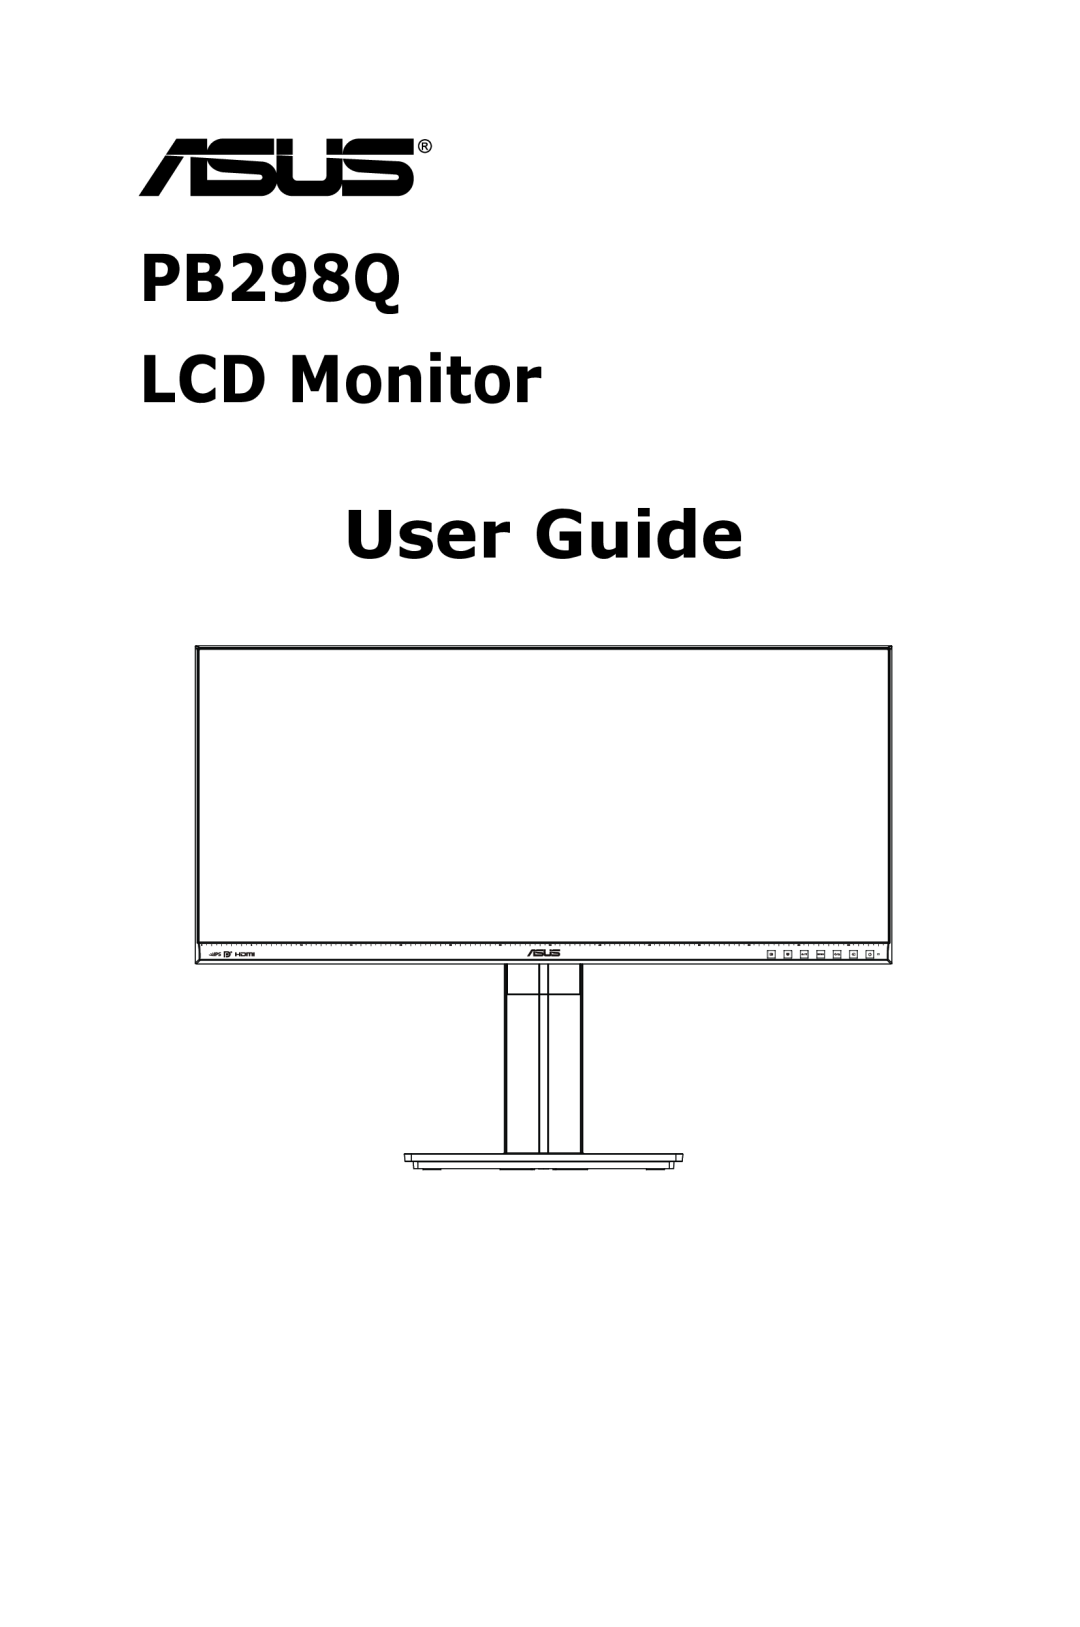 Asus manual PB298Q LCD Monitor User Guide 